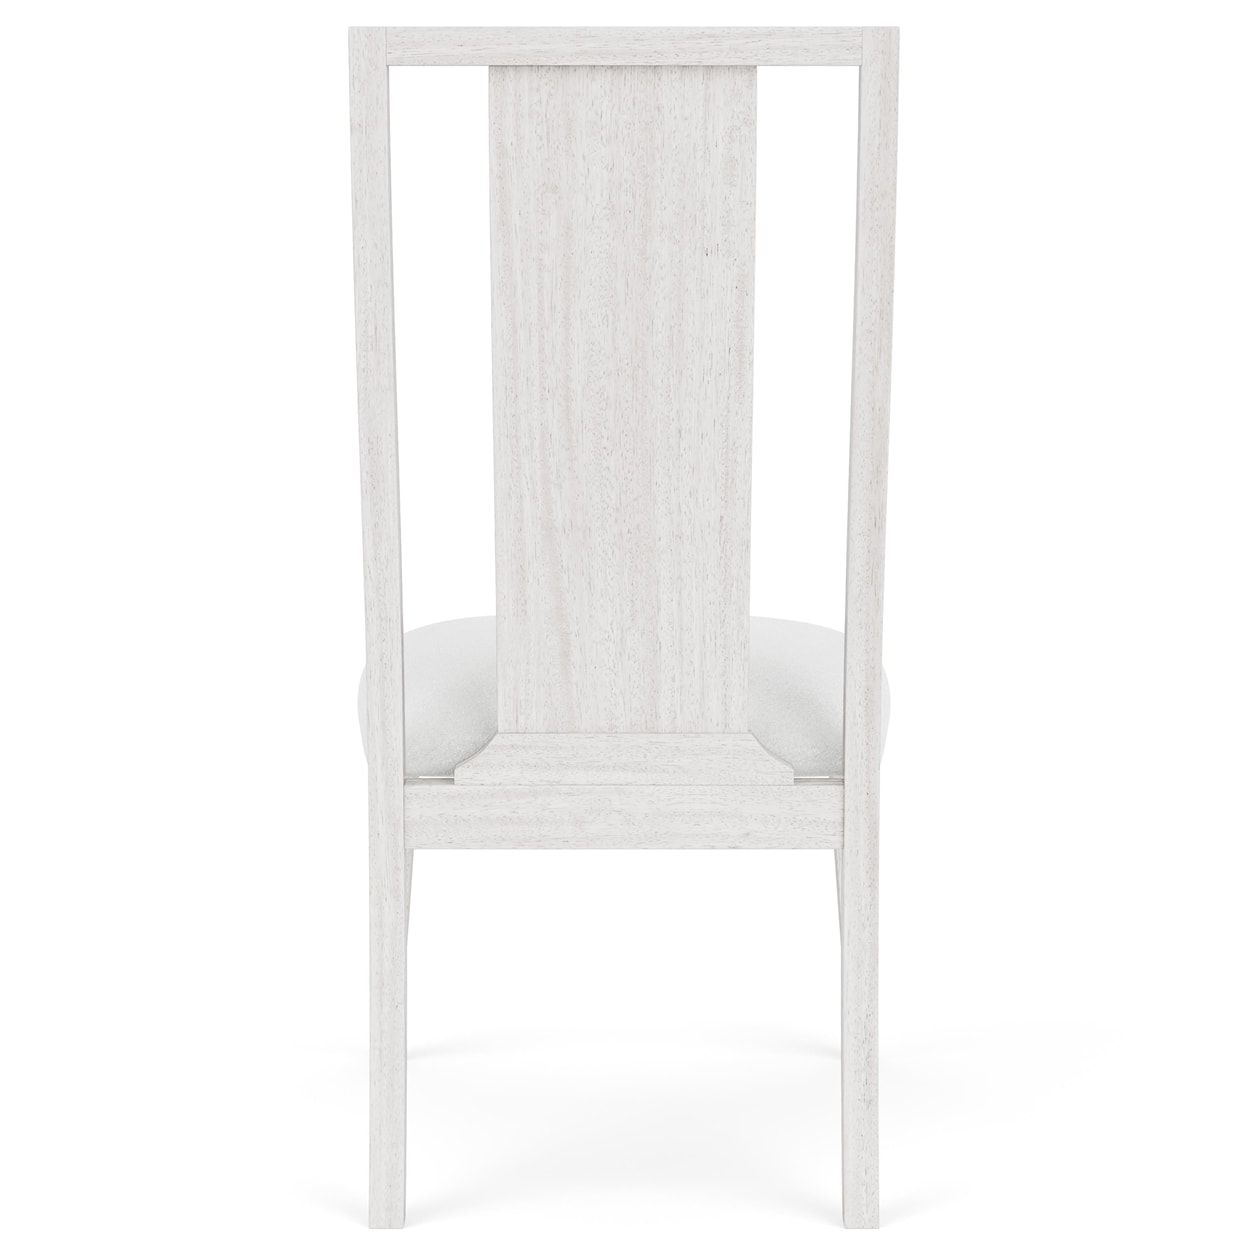 Riverside Furniture Hepburn Upholstered Side Chair